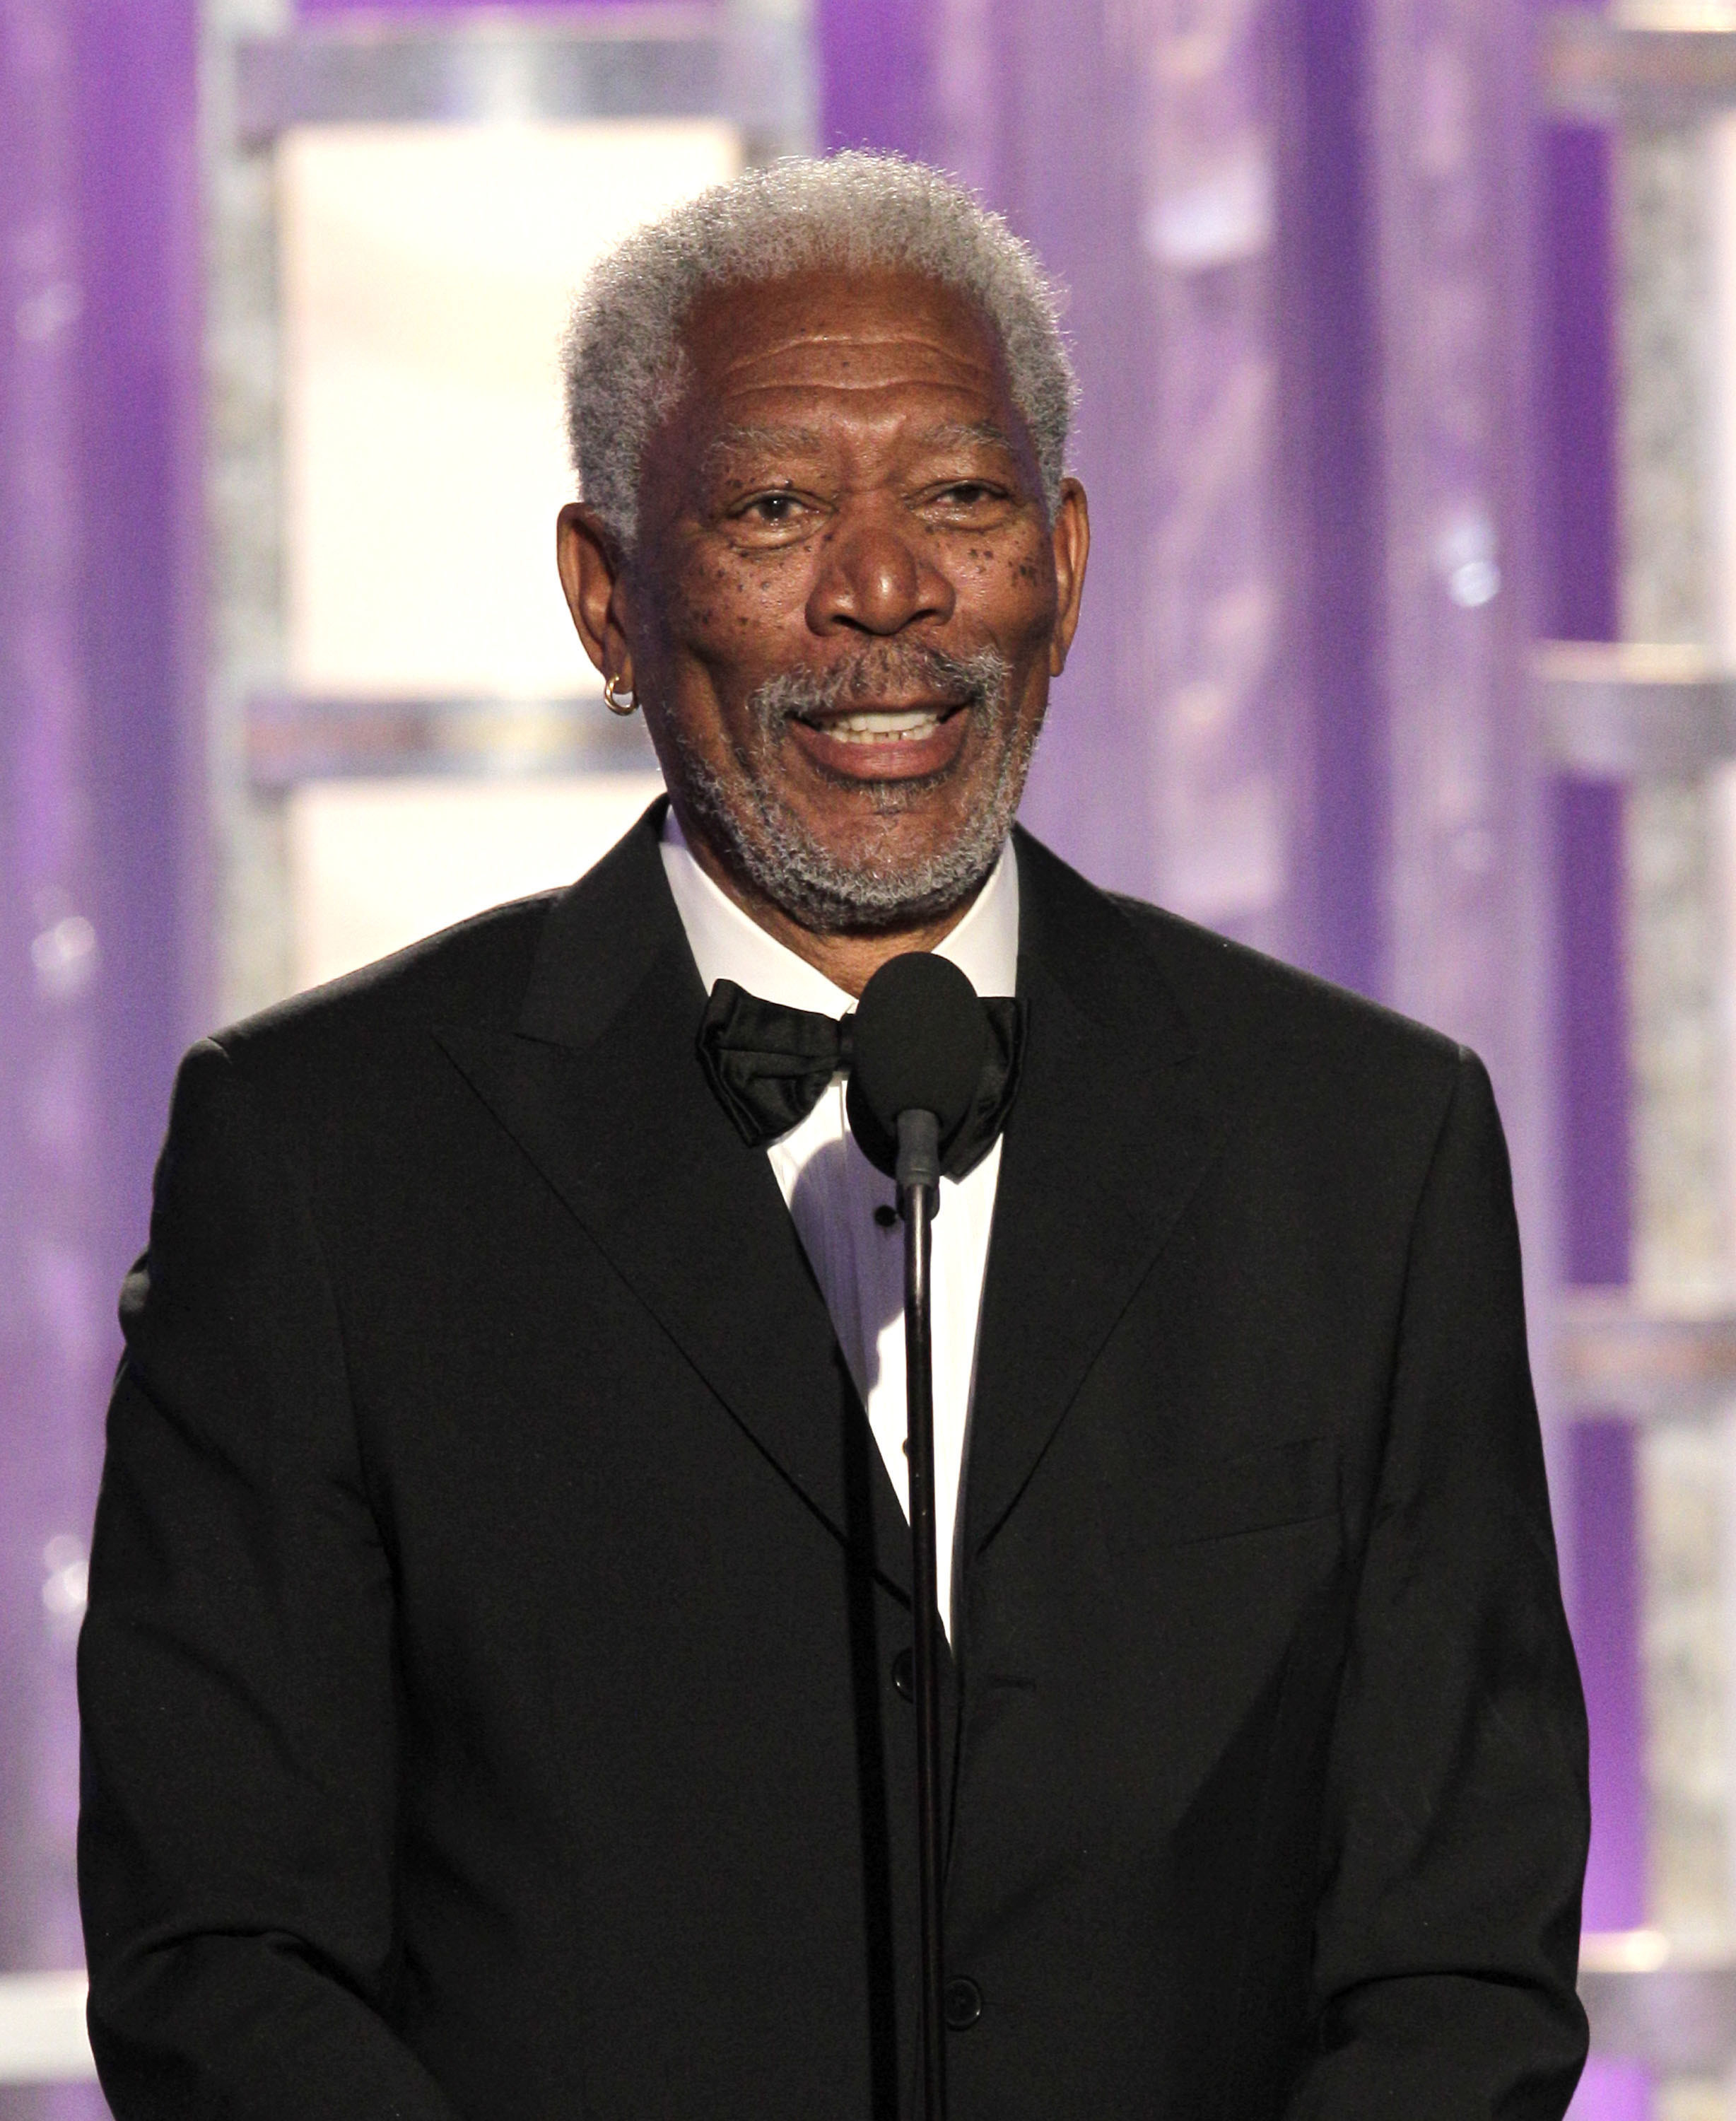 Morgan Freeman presenting at an awards show